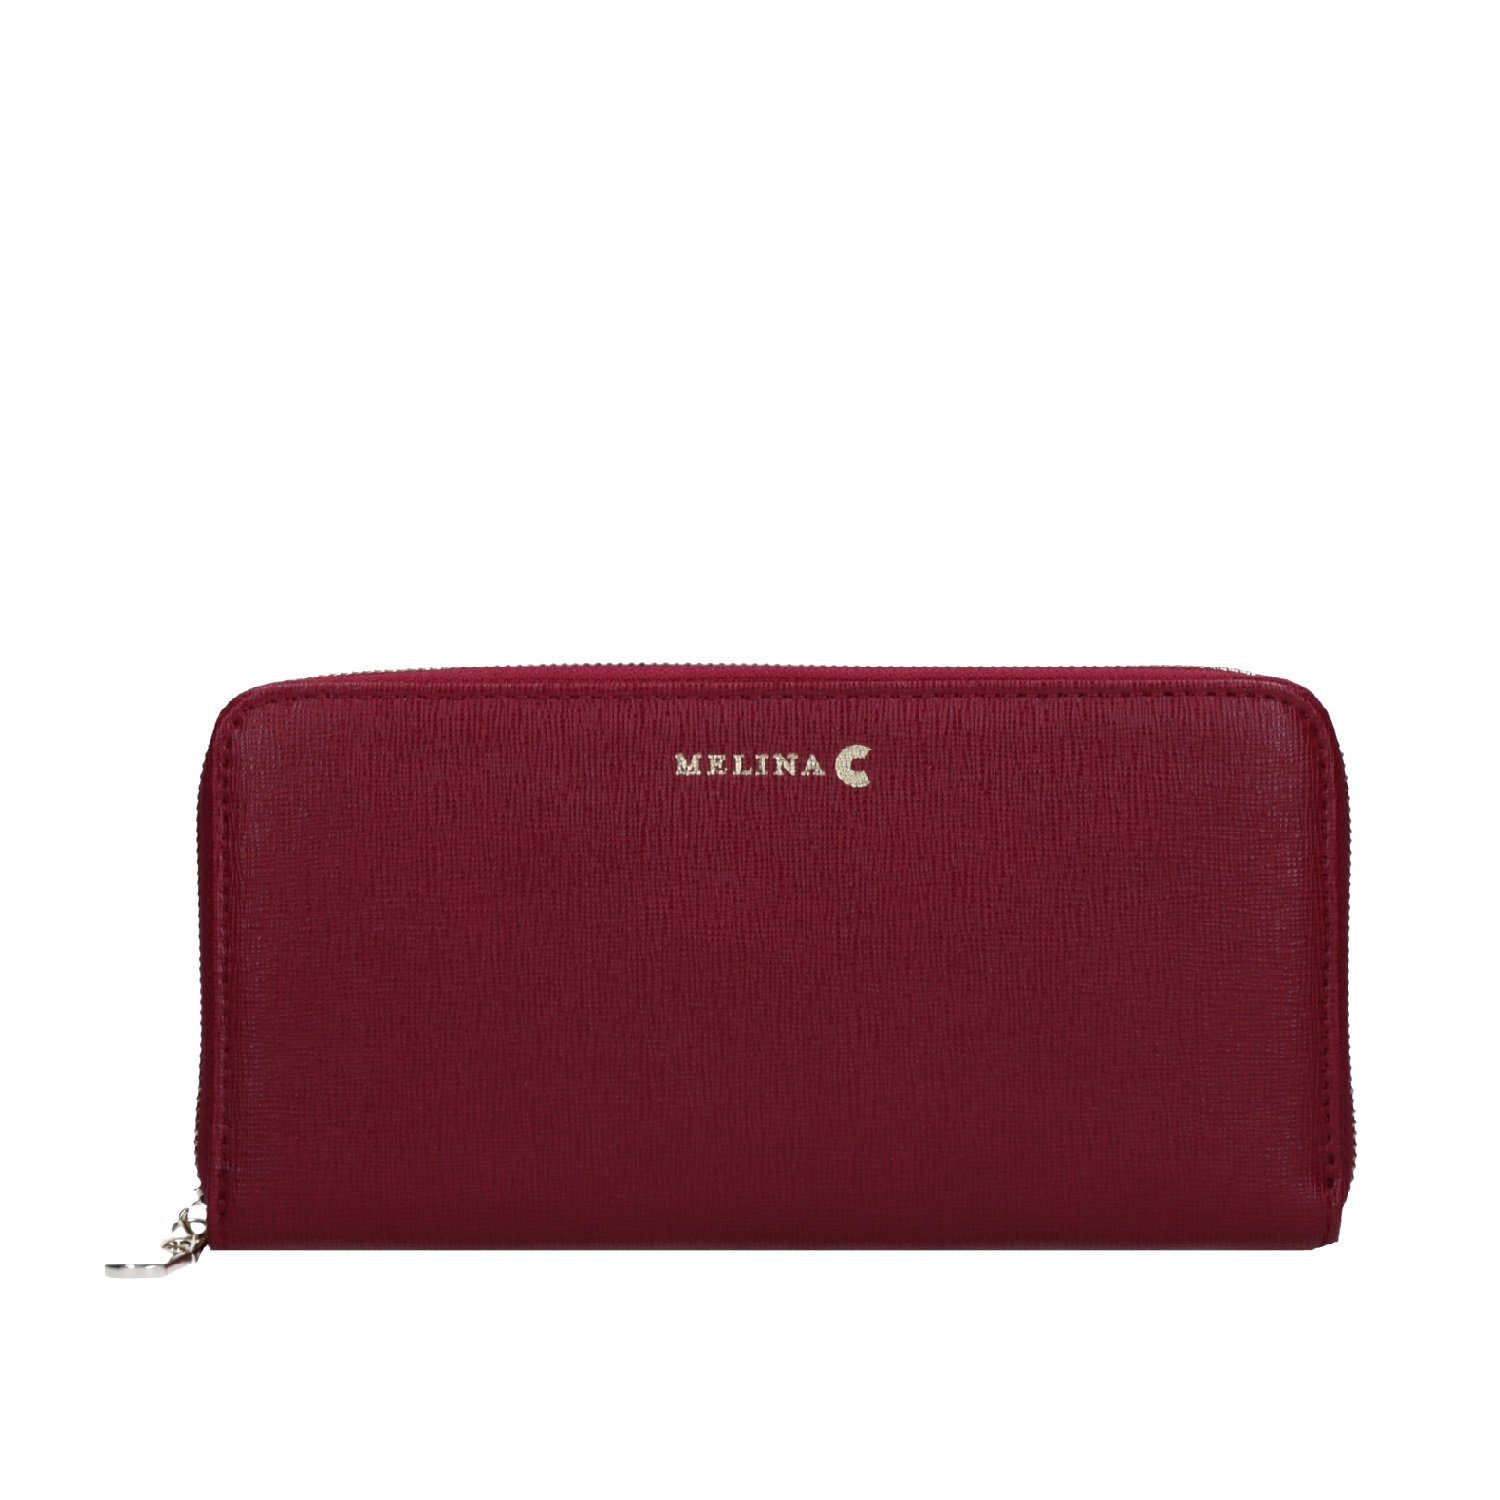 Melina C Geldbörse, Melina red Schulter Echtleder Träger Verstellbare Tasche Umhängetasche C